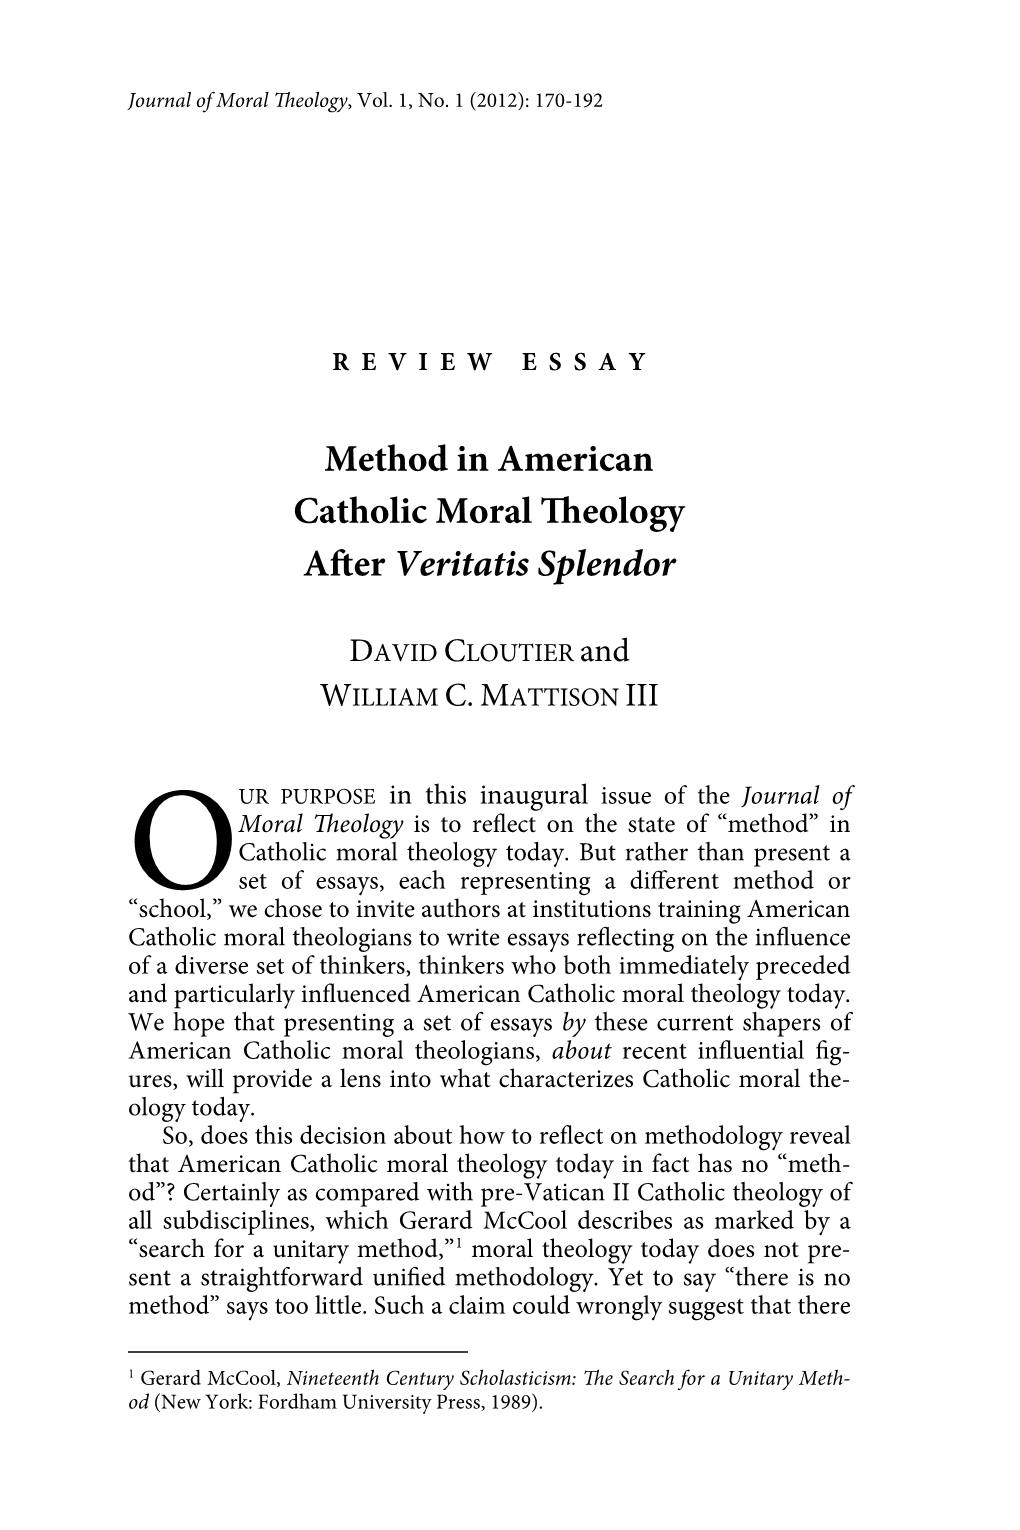 Method in American Catholic Moral Eology a Er Veritatis Splendor